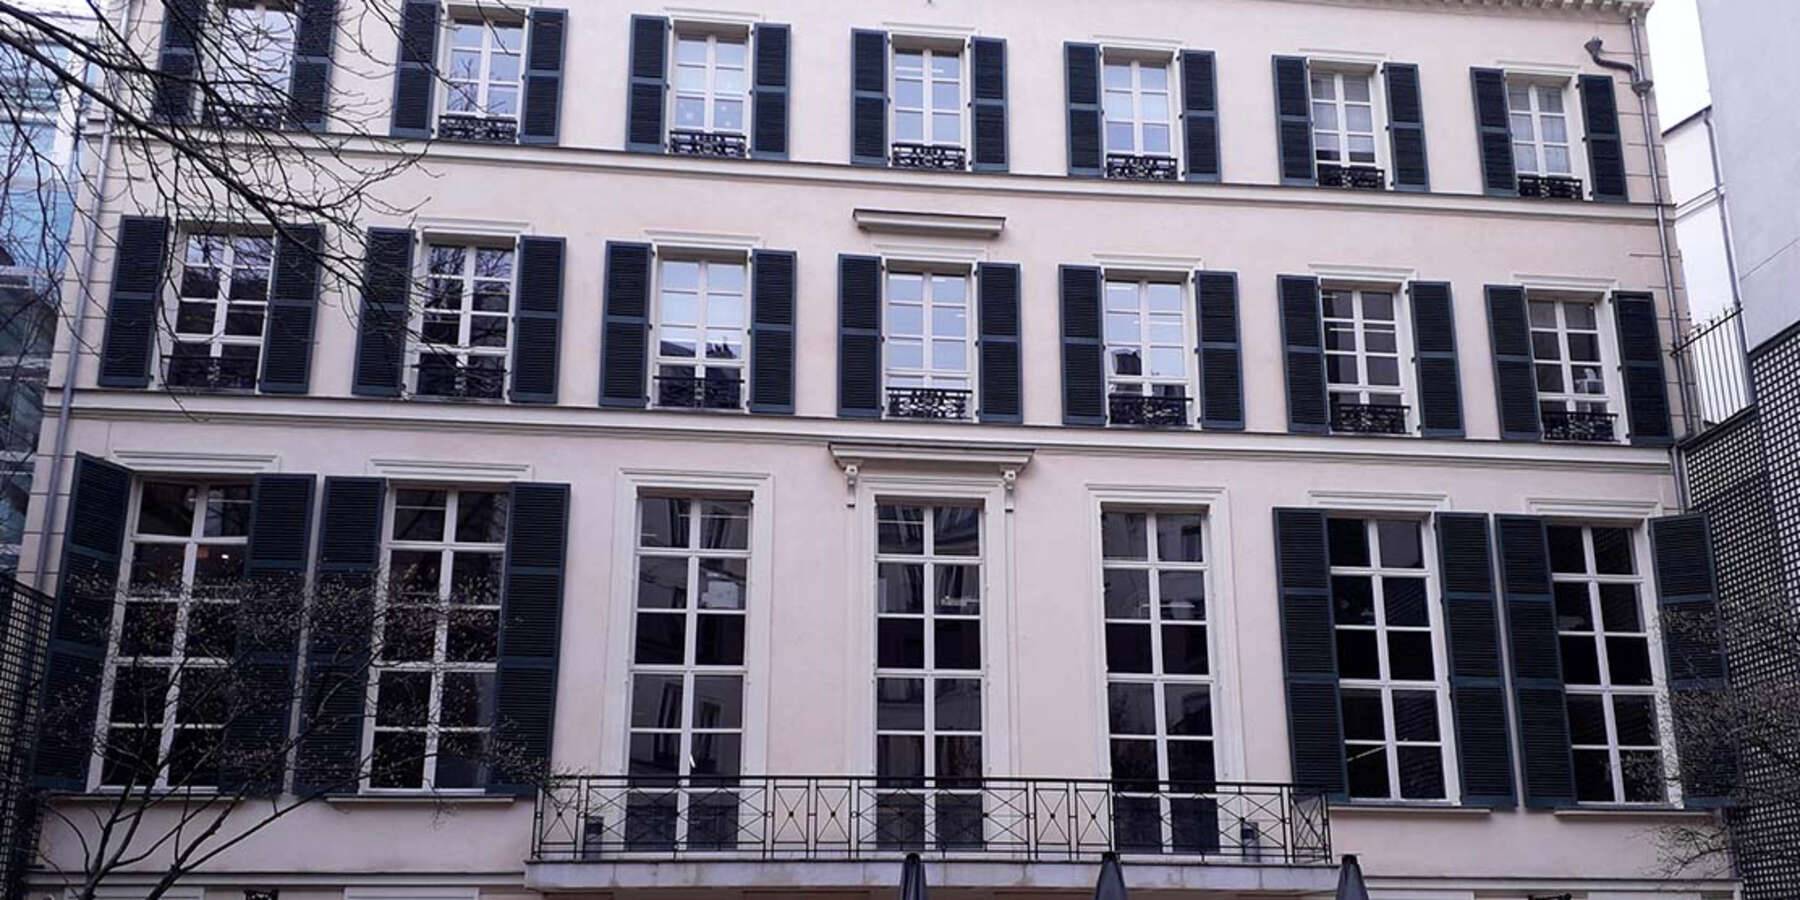 Rénovation aux normes ERP pour cet hôtel particulier parisien